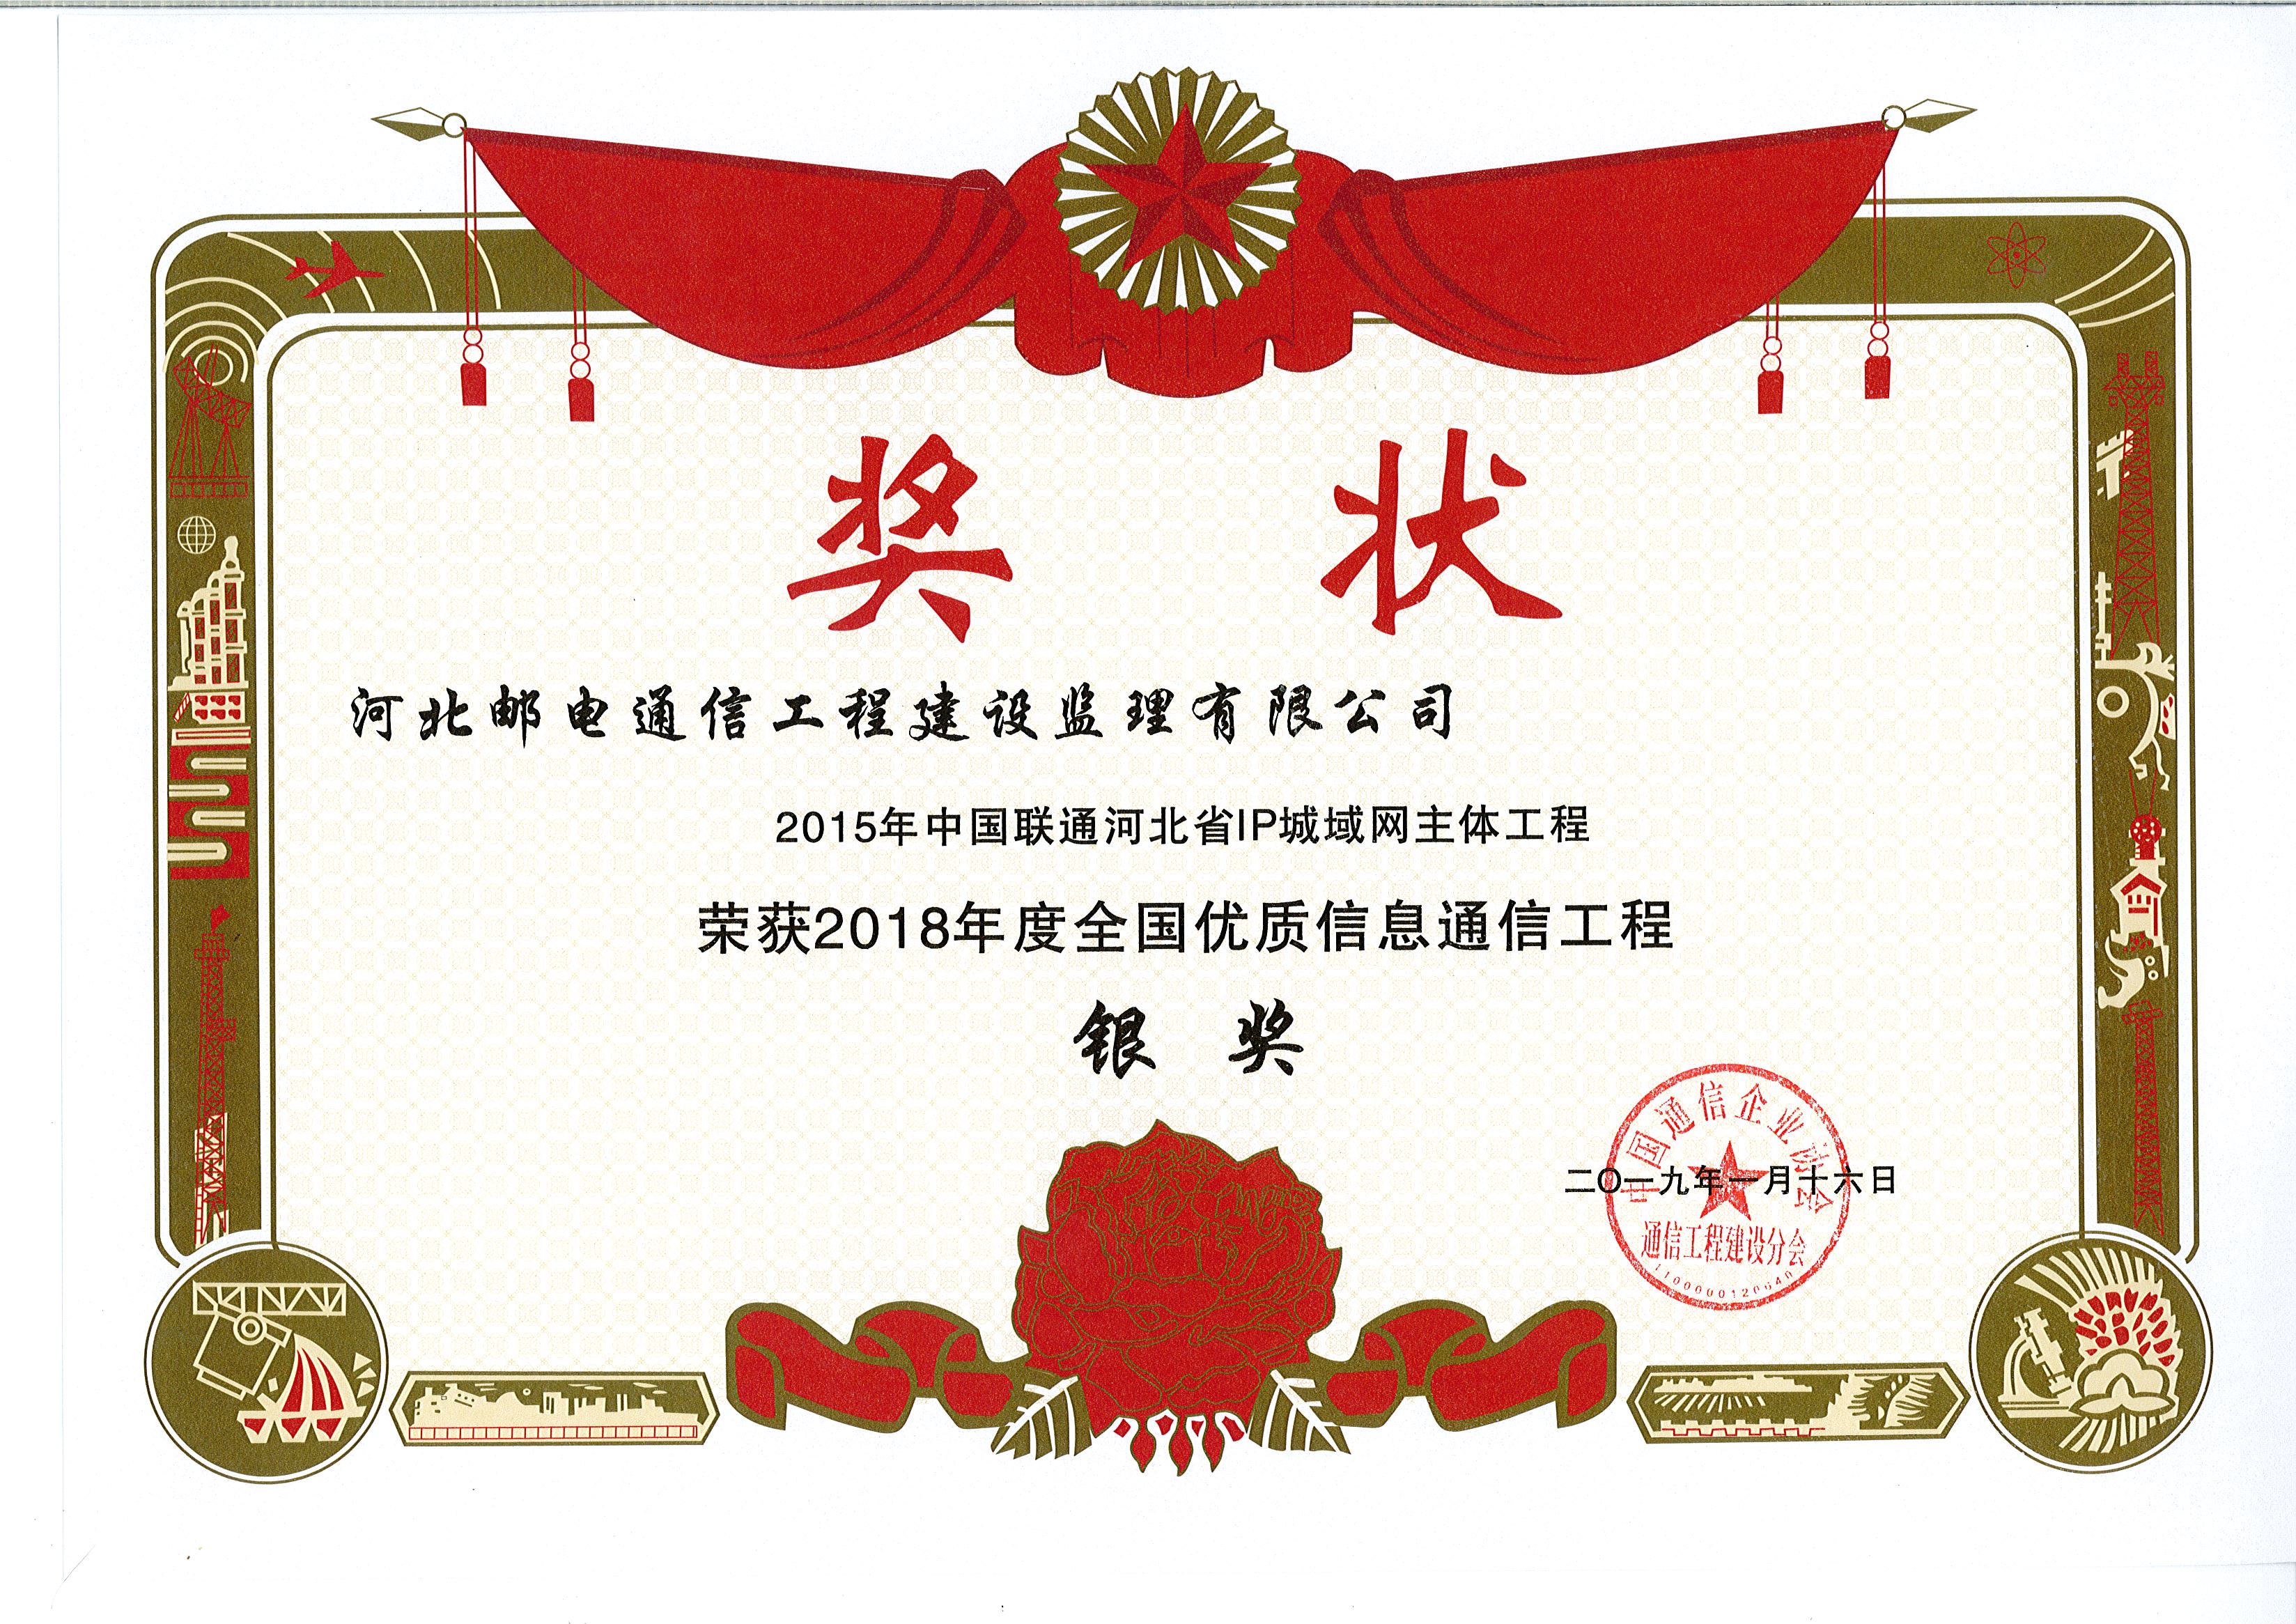 2015年中国联通河北省IP城域网主体工程